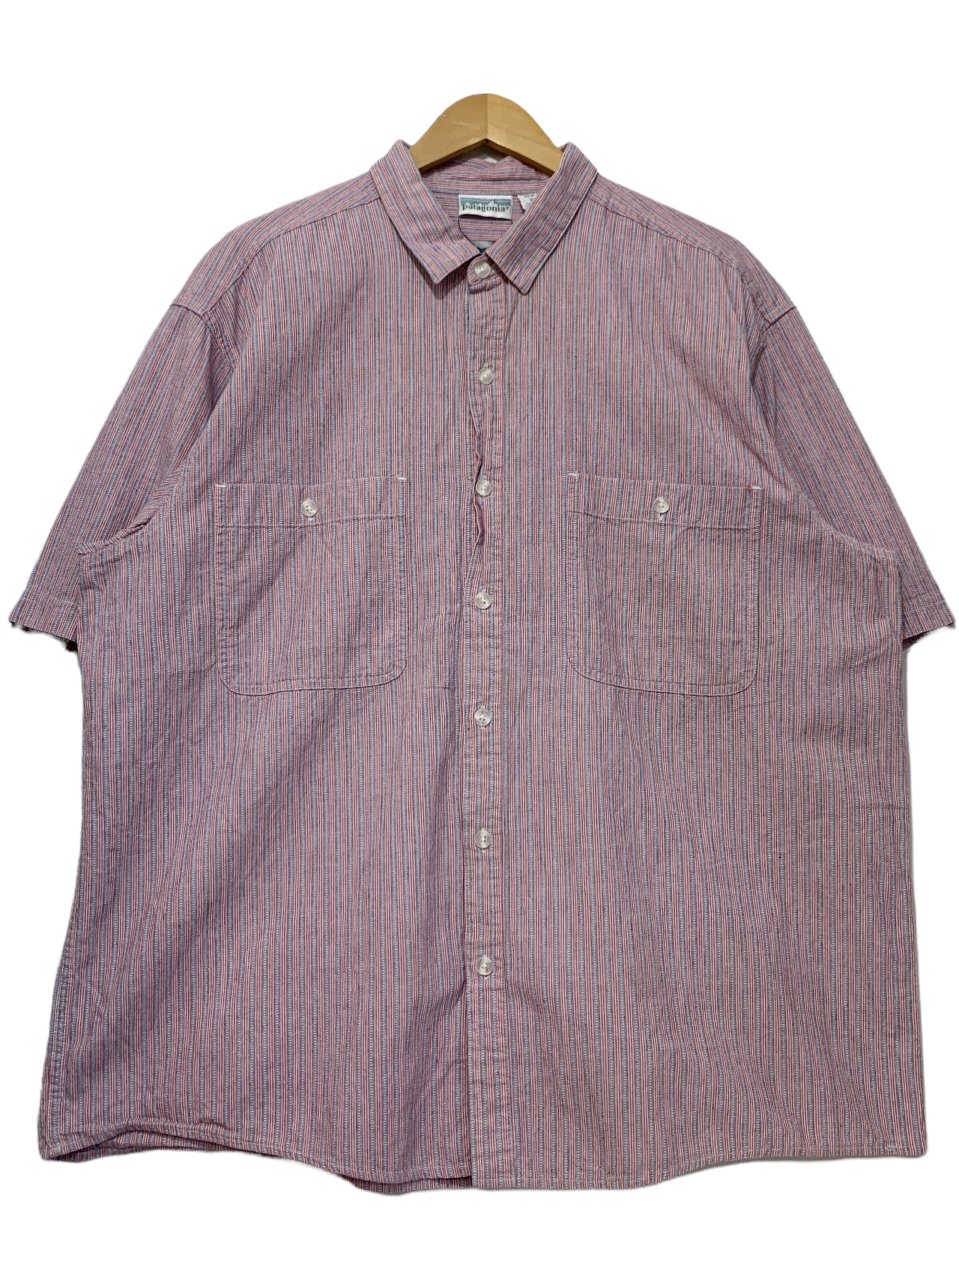 91年製 patagonia Cotton Stripe S/S Shirt ピンク青 XL 90s 白タグ 